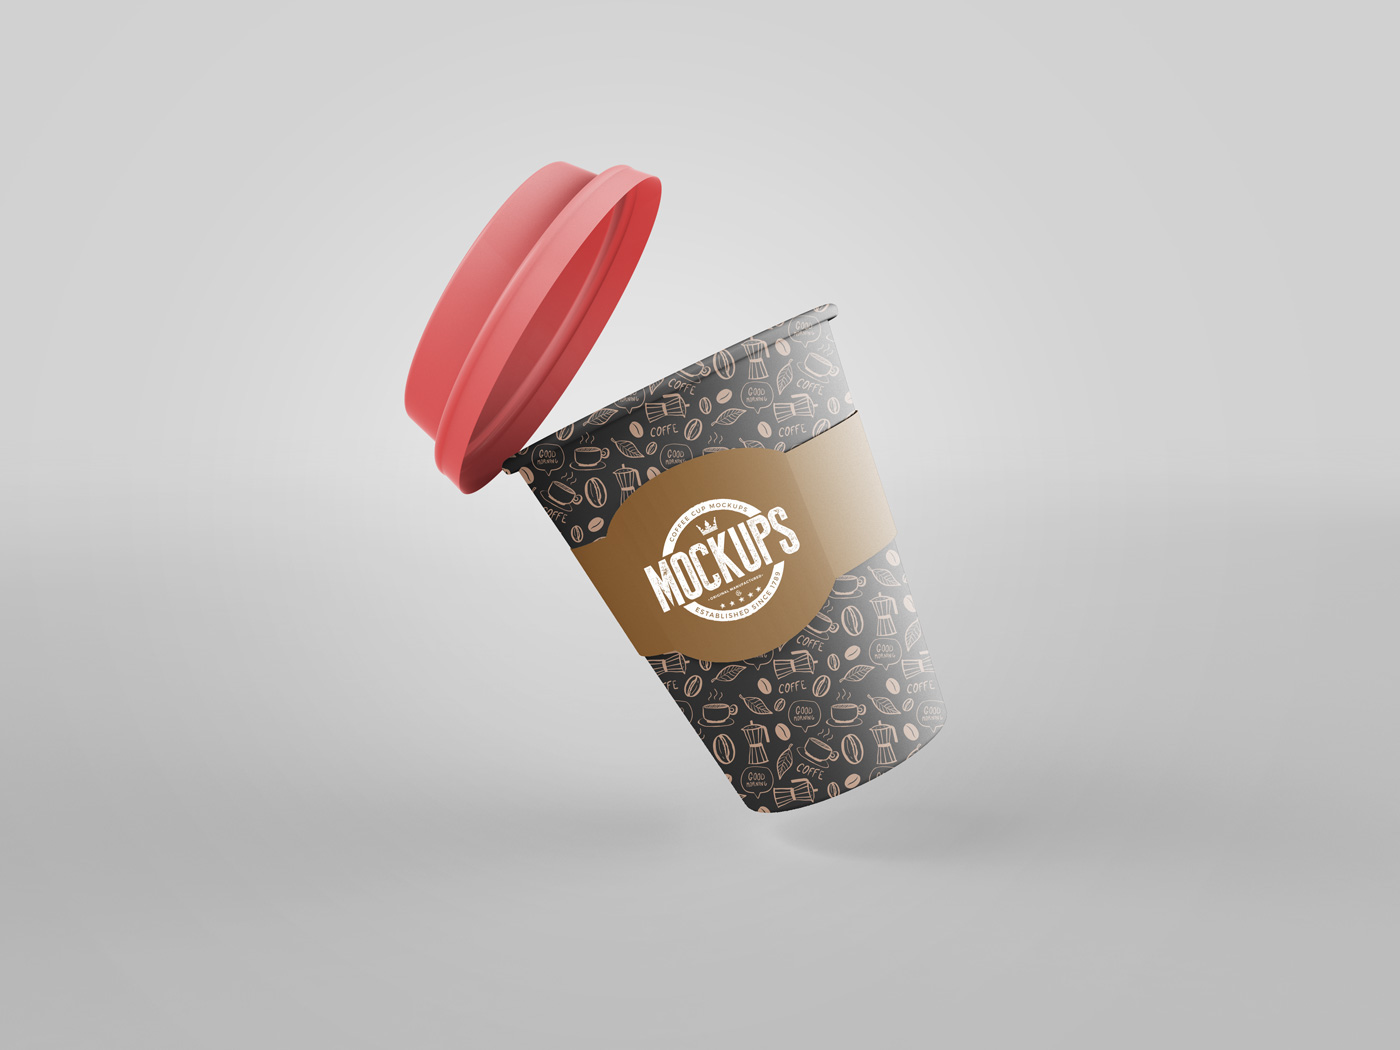 mockups coffee cup cup Coffee Packaging showcase branding  logo 3D mock-ups